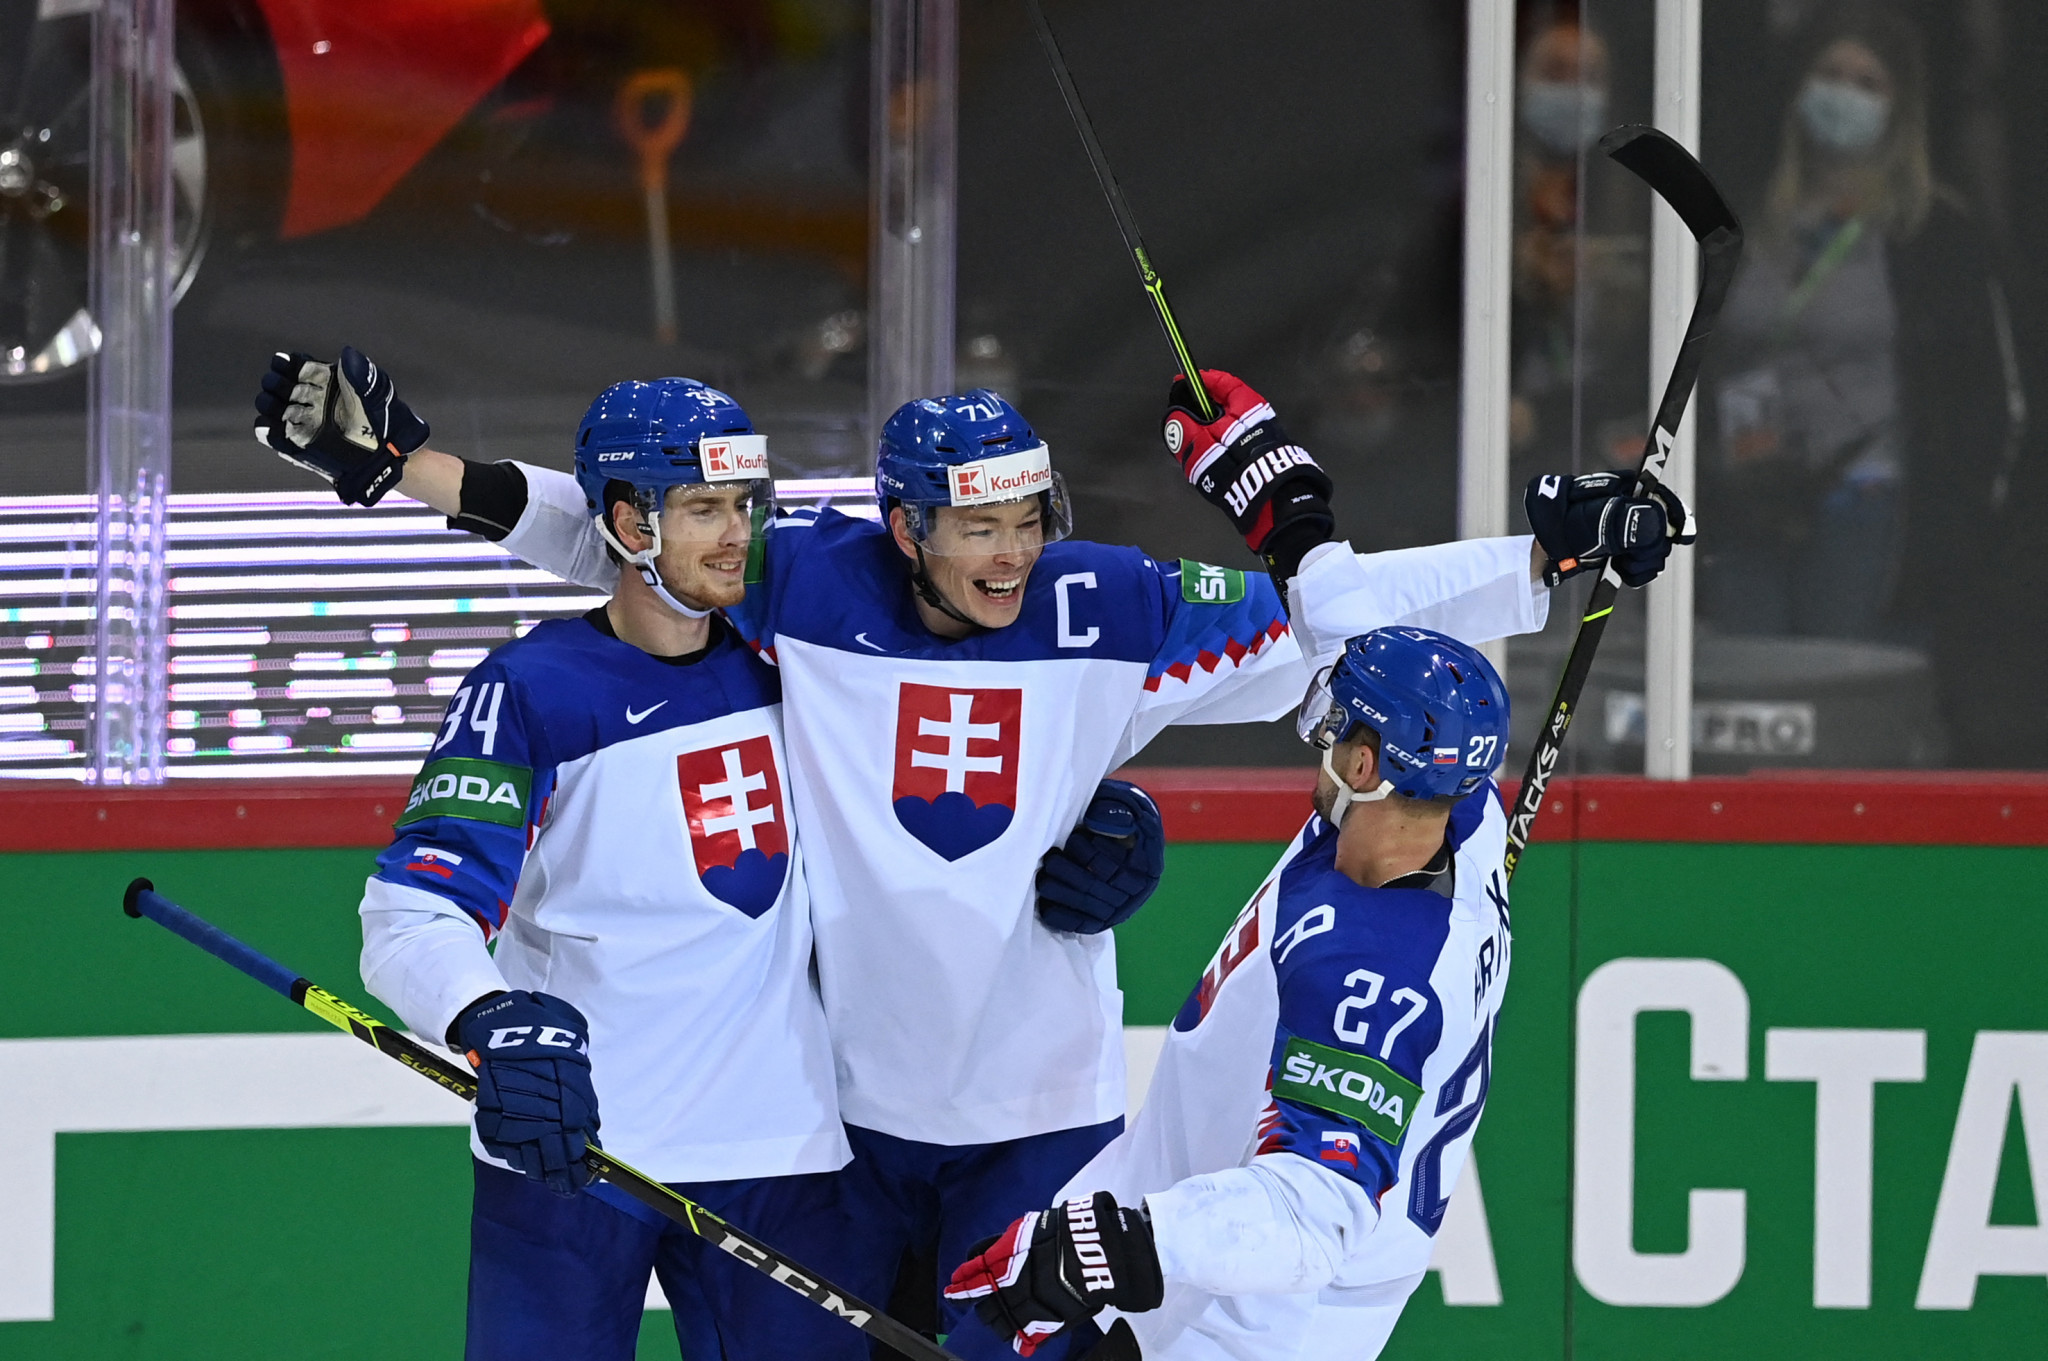 Slovenský zväz ľadového hokeja nepozval na svetový šampionát hráčov KHL